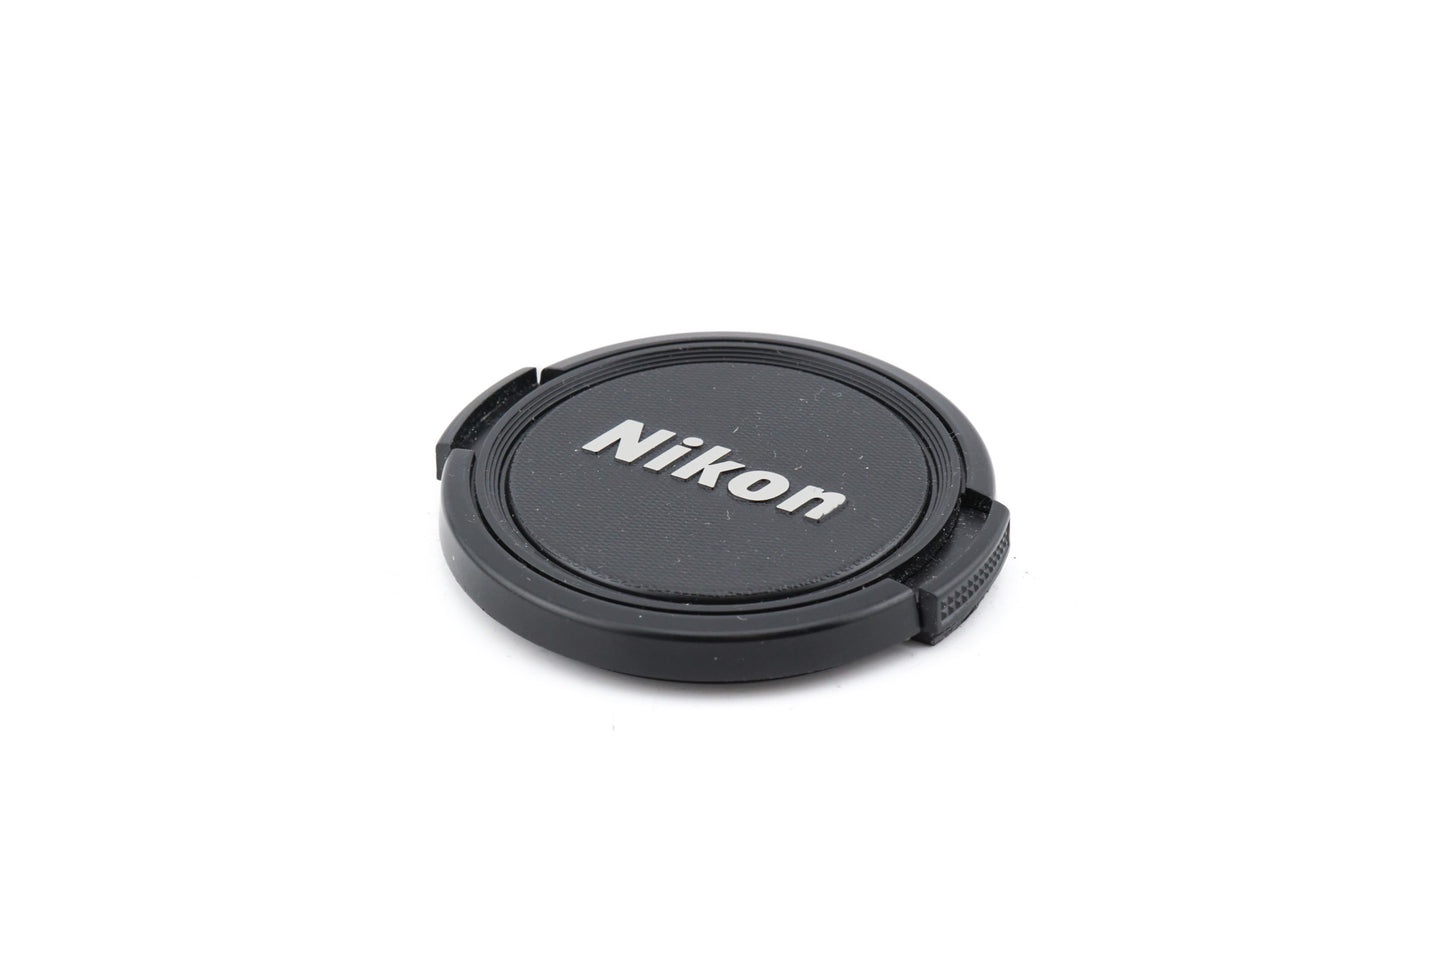 Nikon F60 + 35-80mm f4-5.6 D AF Nikkor